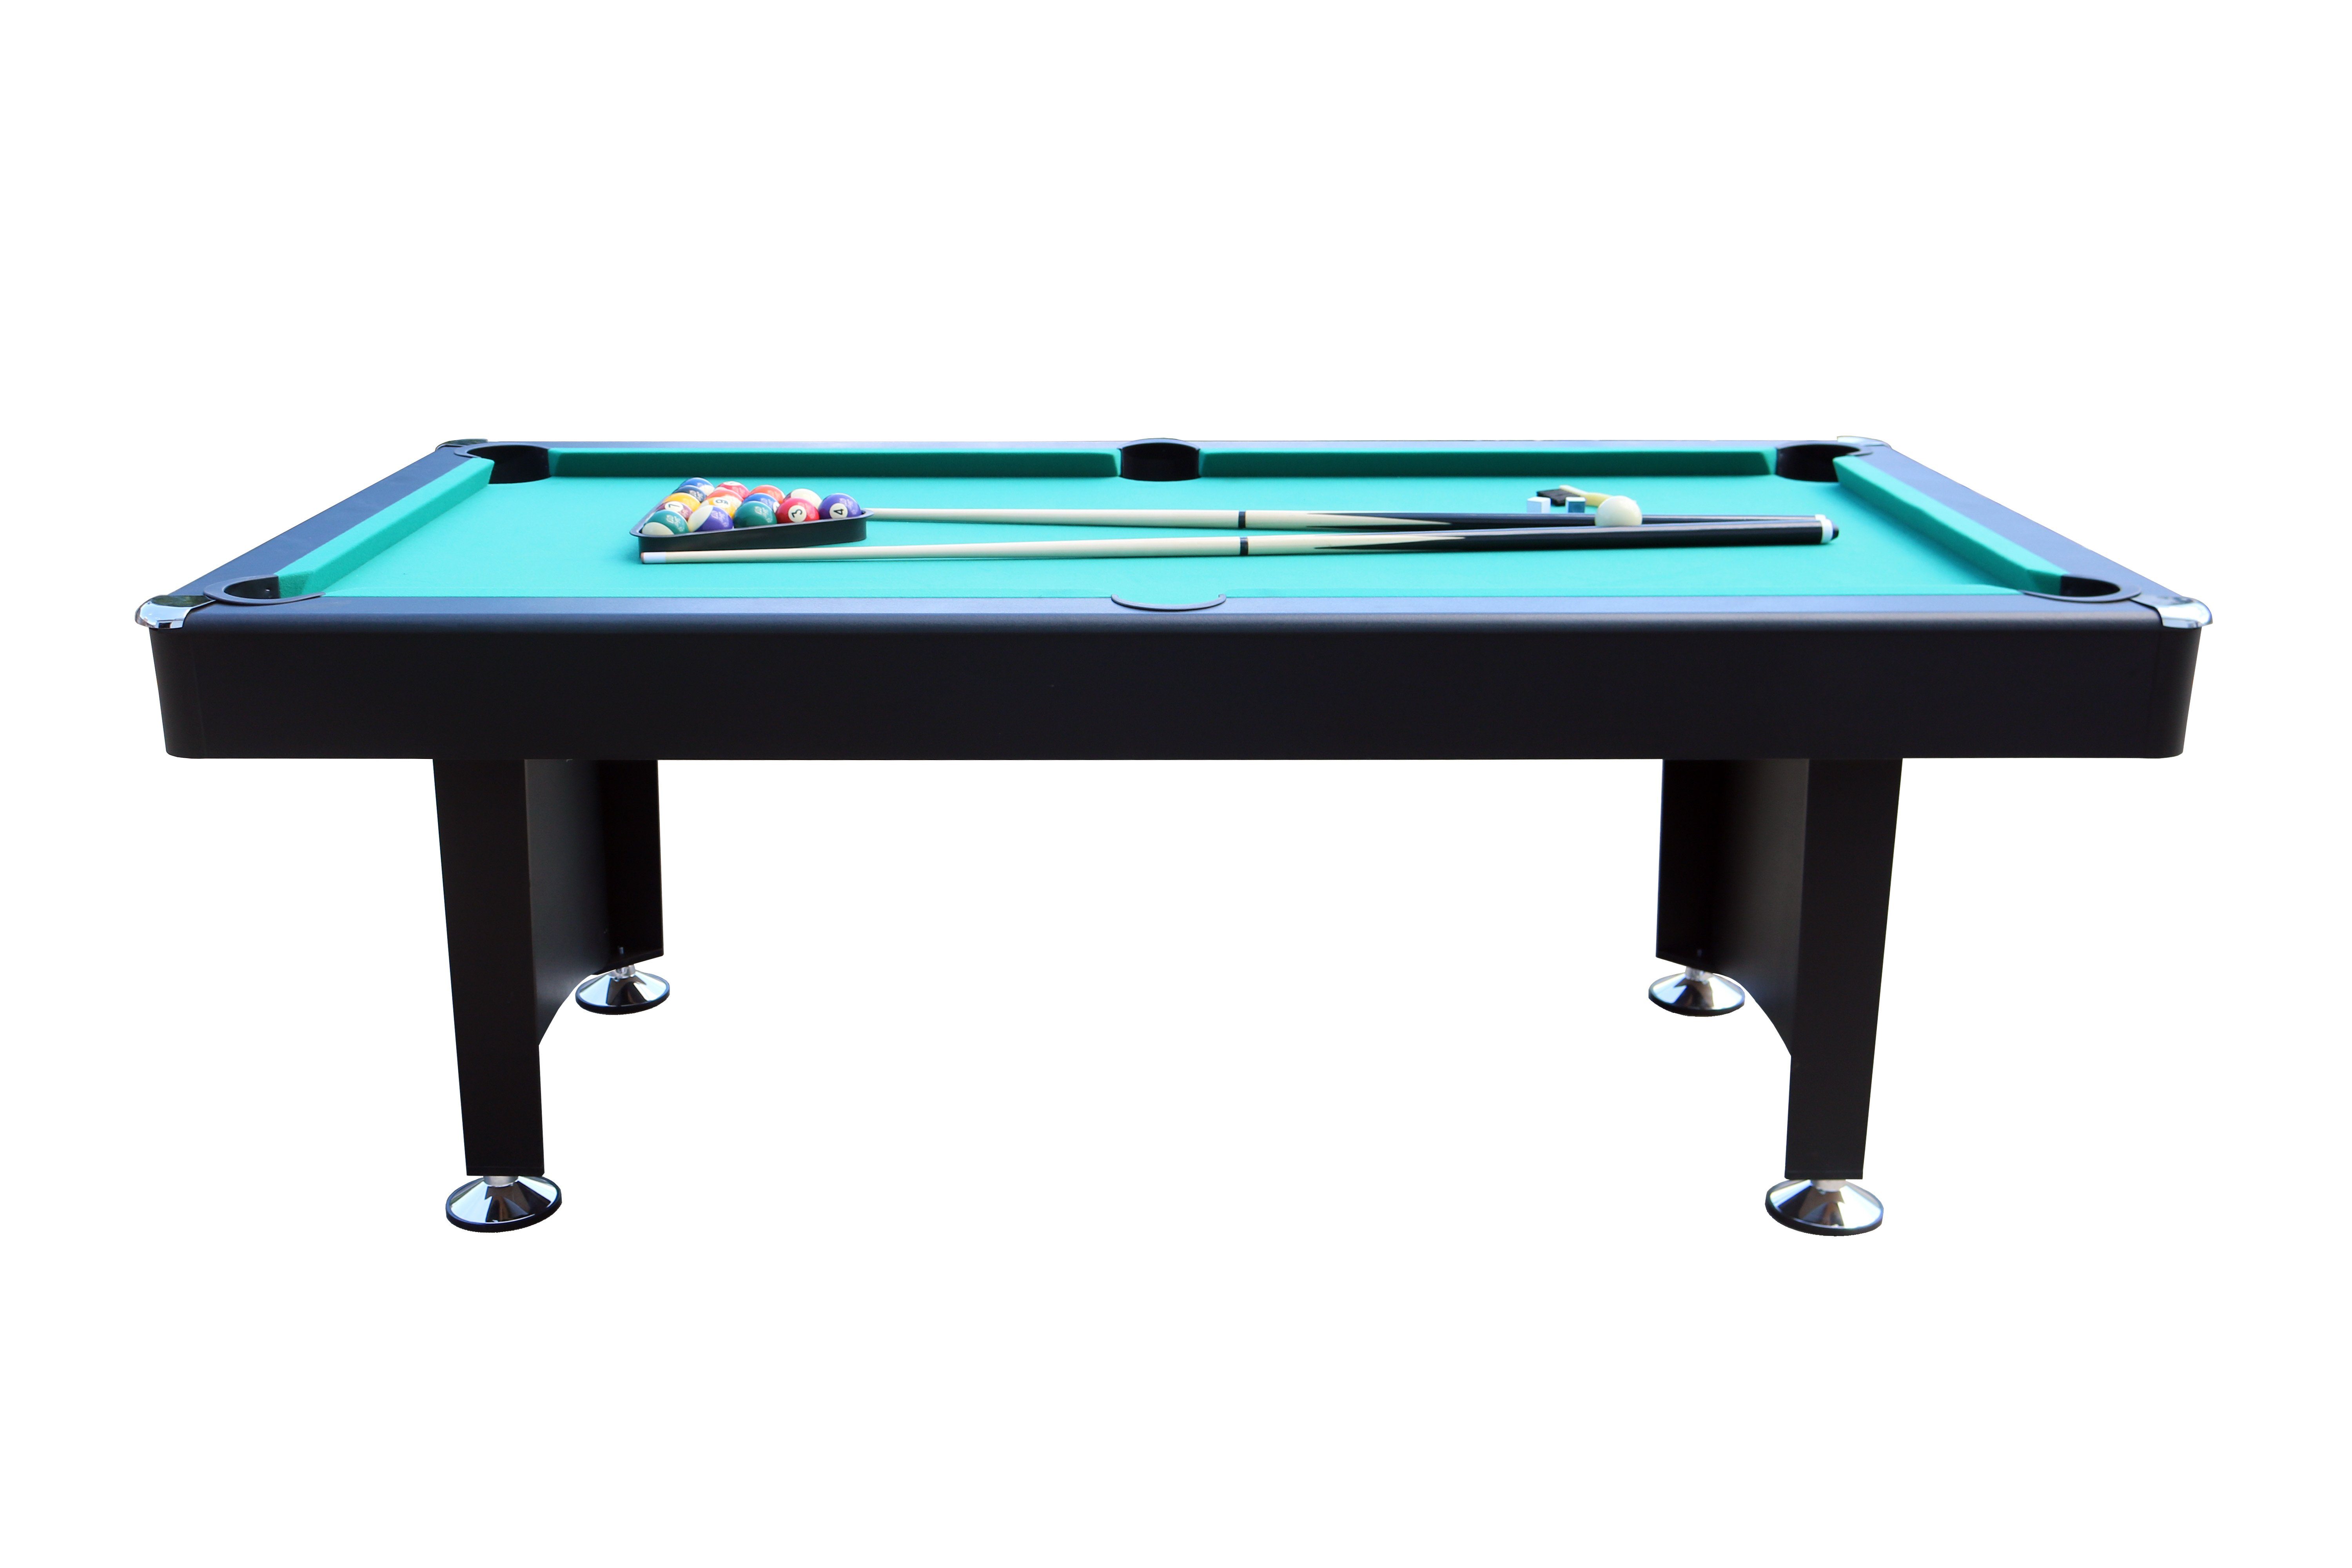 L.A. Sports Billardtisch Premium Pool-Billard 7ft groß, (Komplett Set),  Tischbillard schwarz grünes Spieltuch mit Zubehör